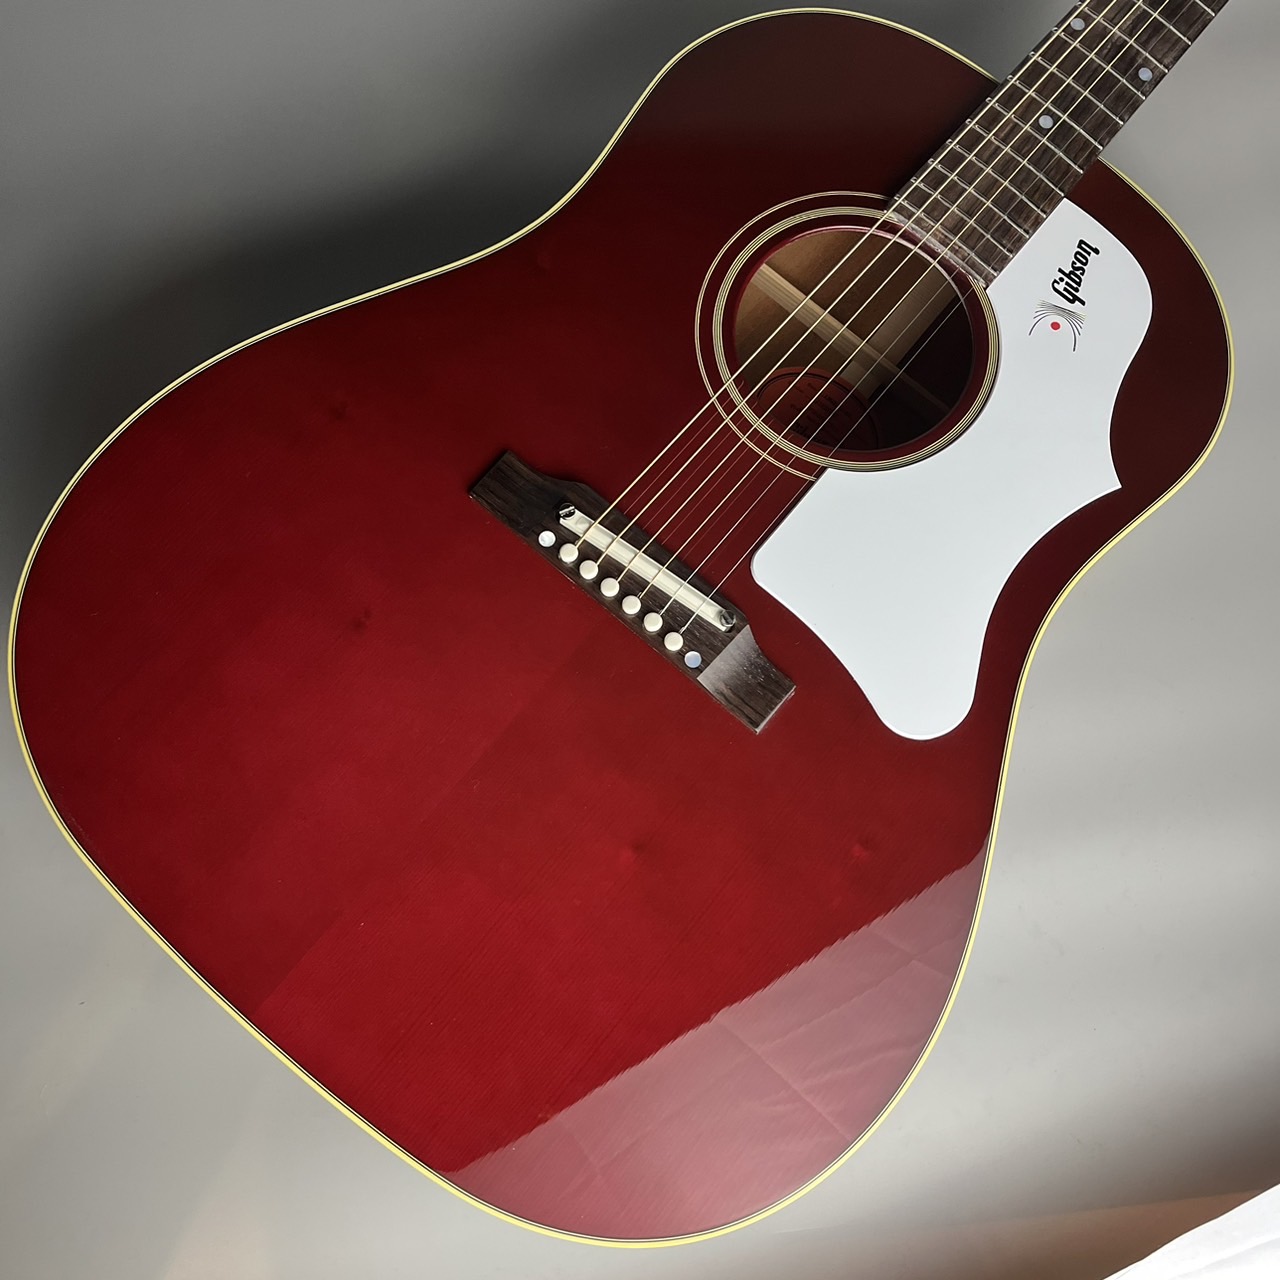 専門店では SeiyaGibson J-45アコースティック93056040 1963 ギター 